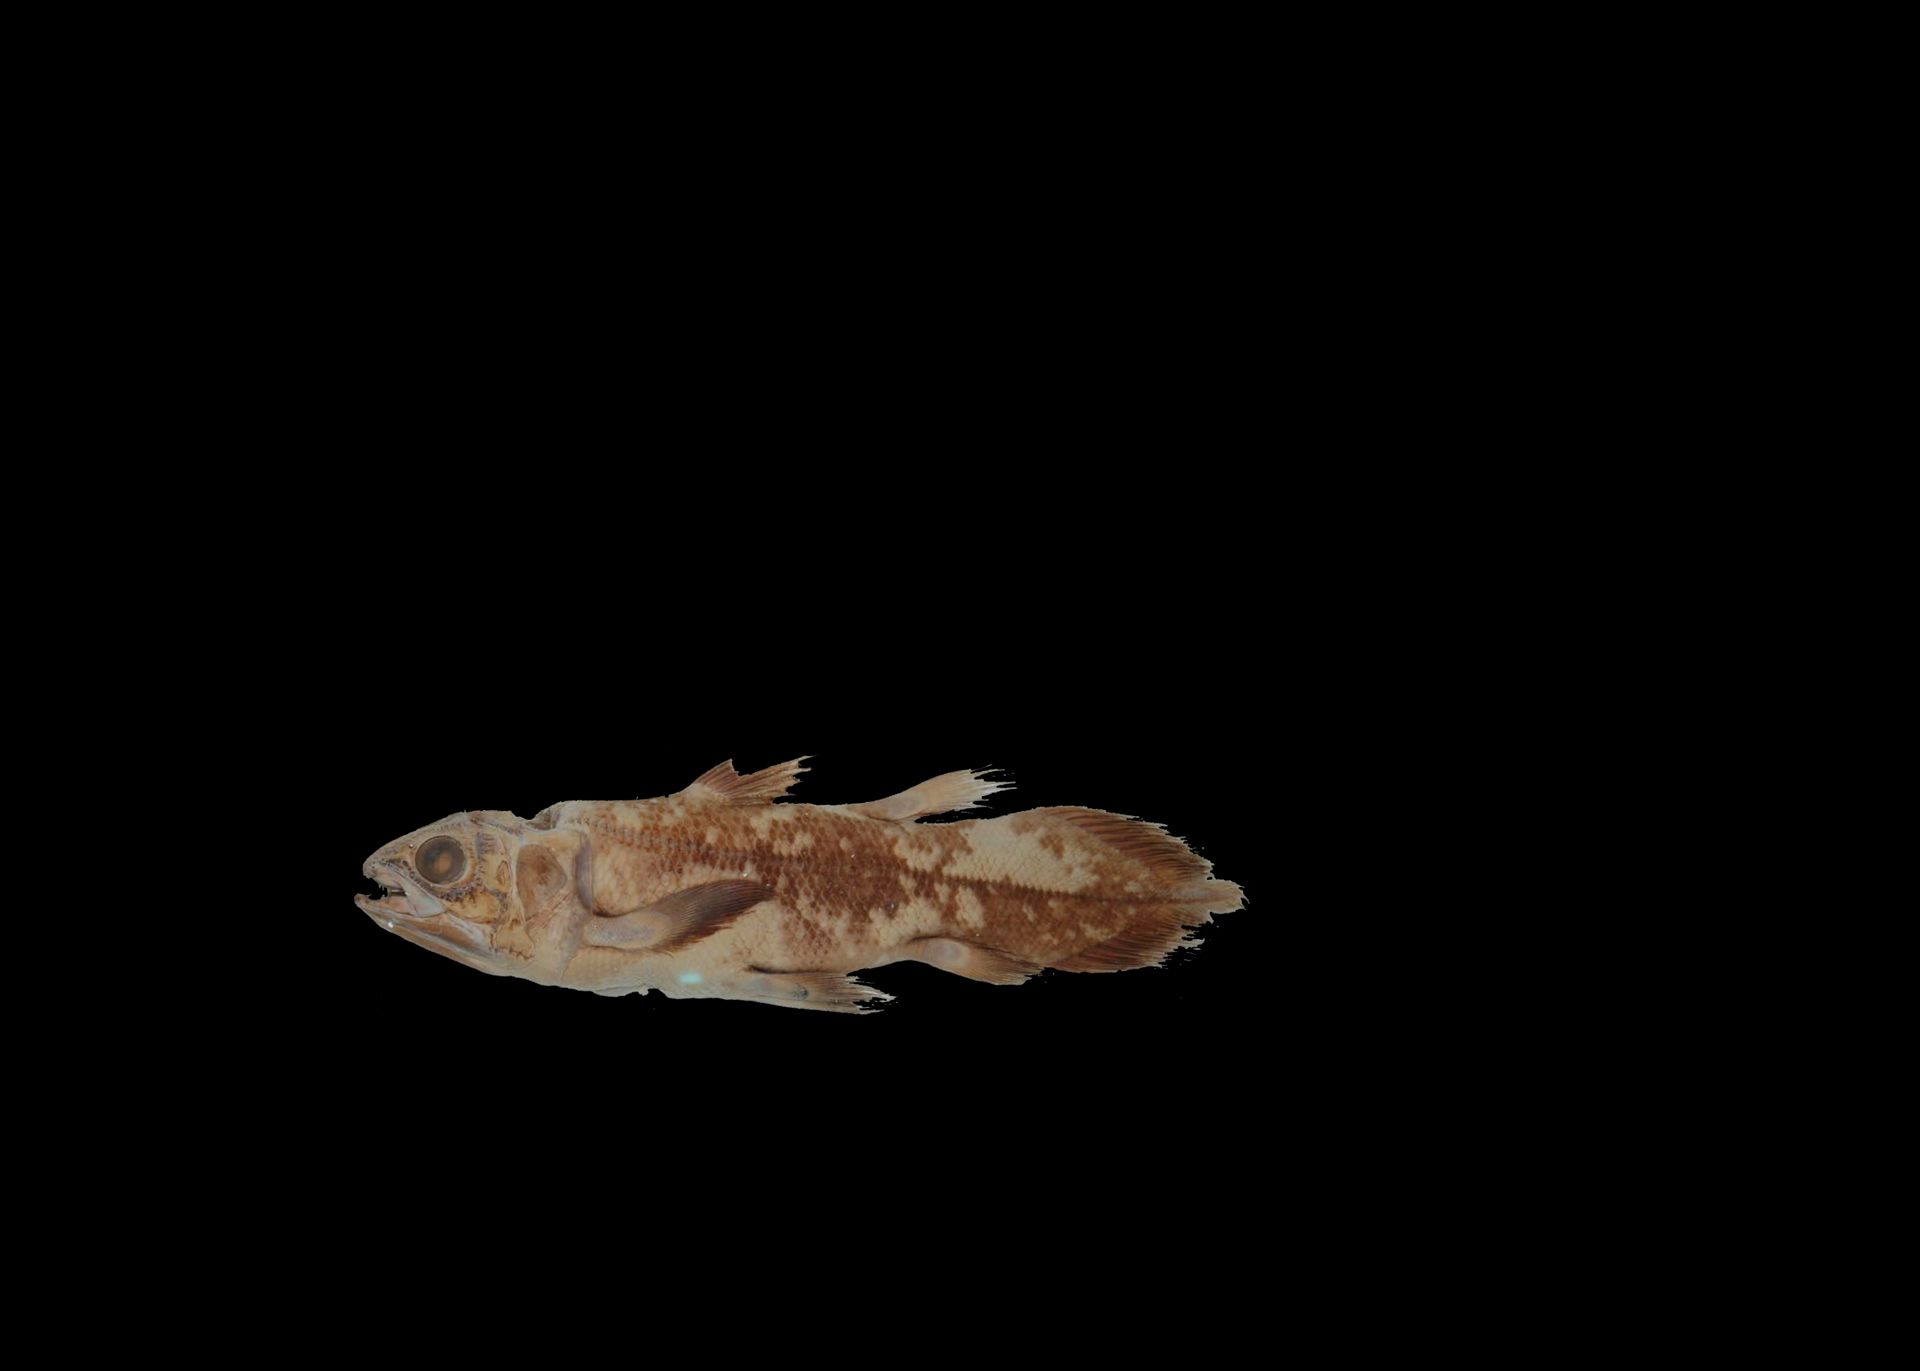 Kvastfinnefisken, på svart bakgrunn, har fått et mer brunlig skinn og mer solid farge på finnene.